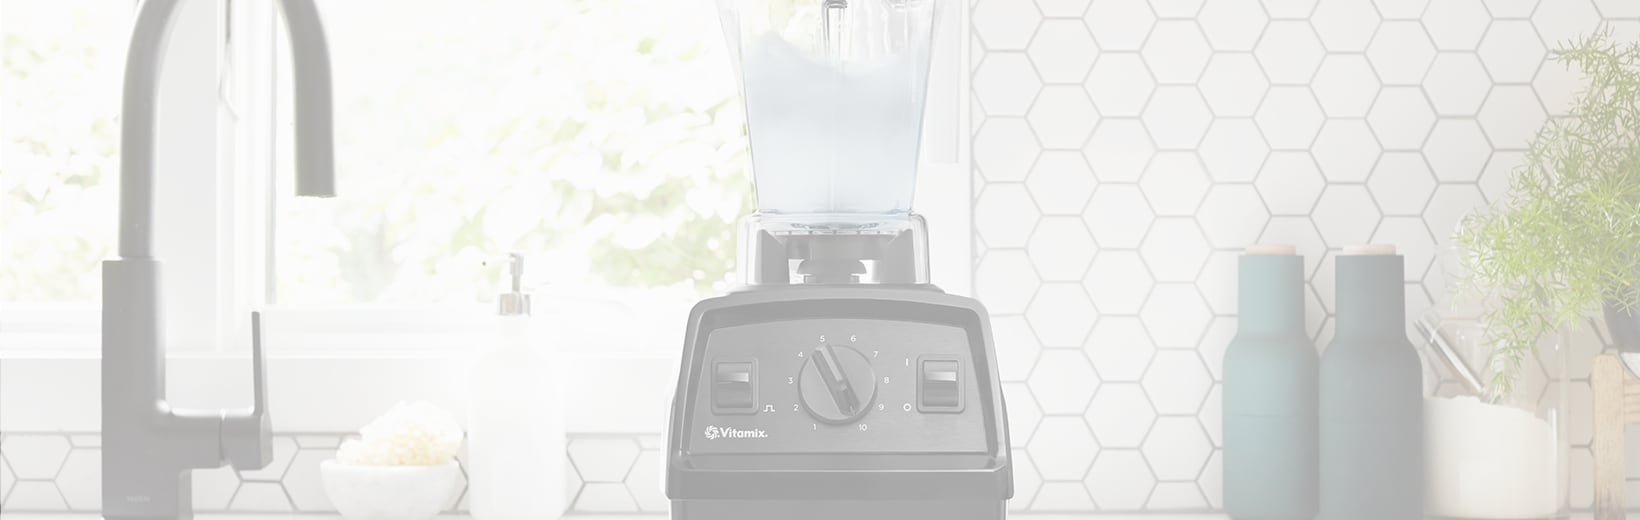 Image of Blender on Sink